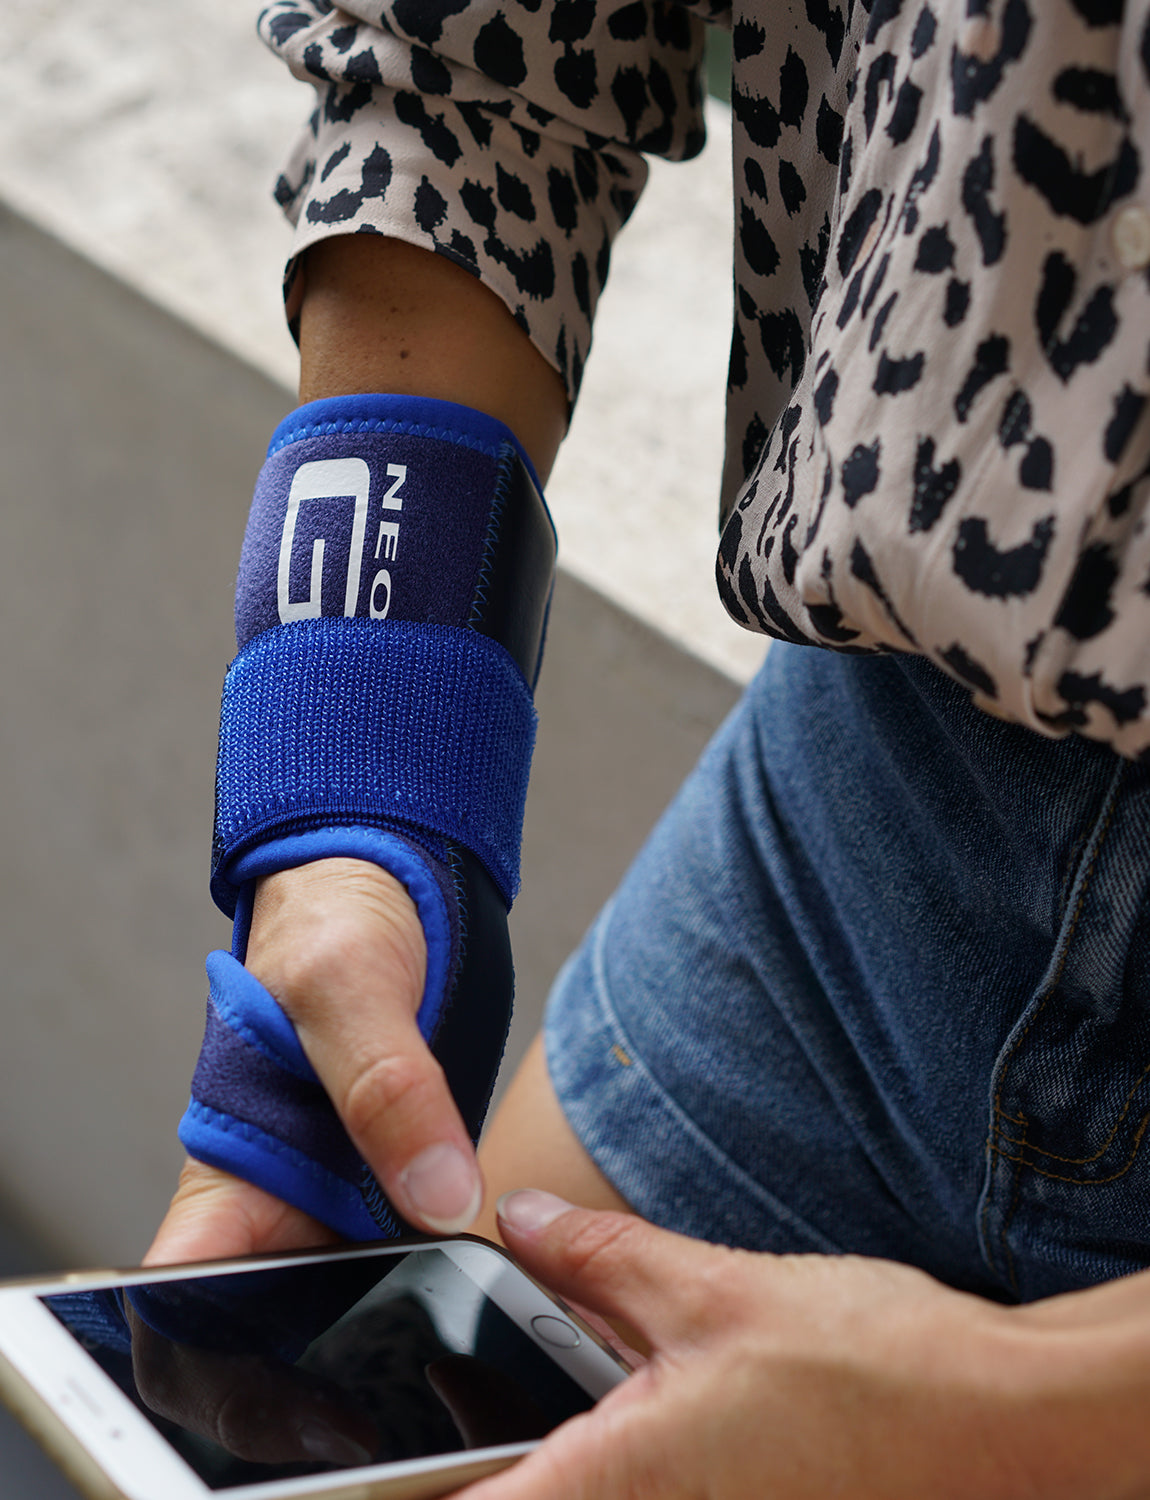 Neo G Stabilized Wrist Brace – Neo G USA